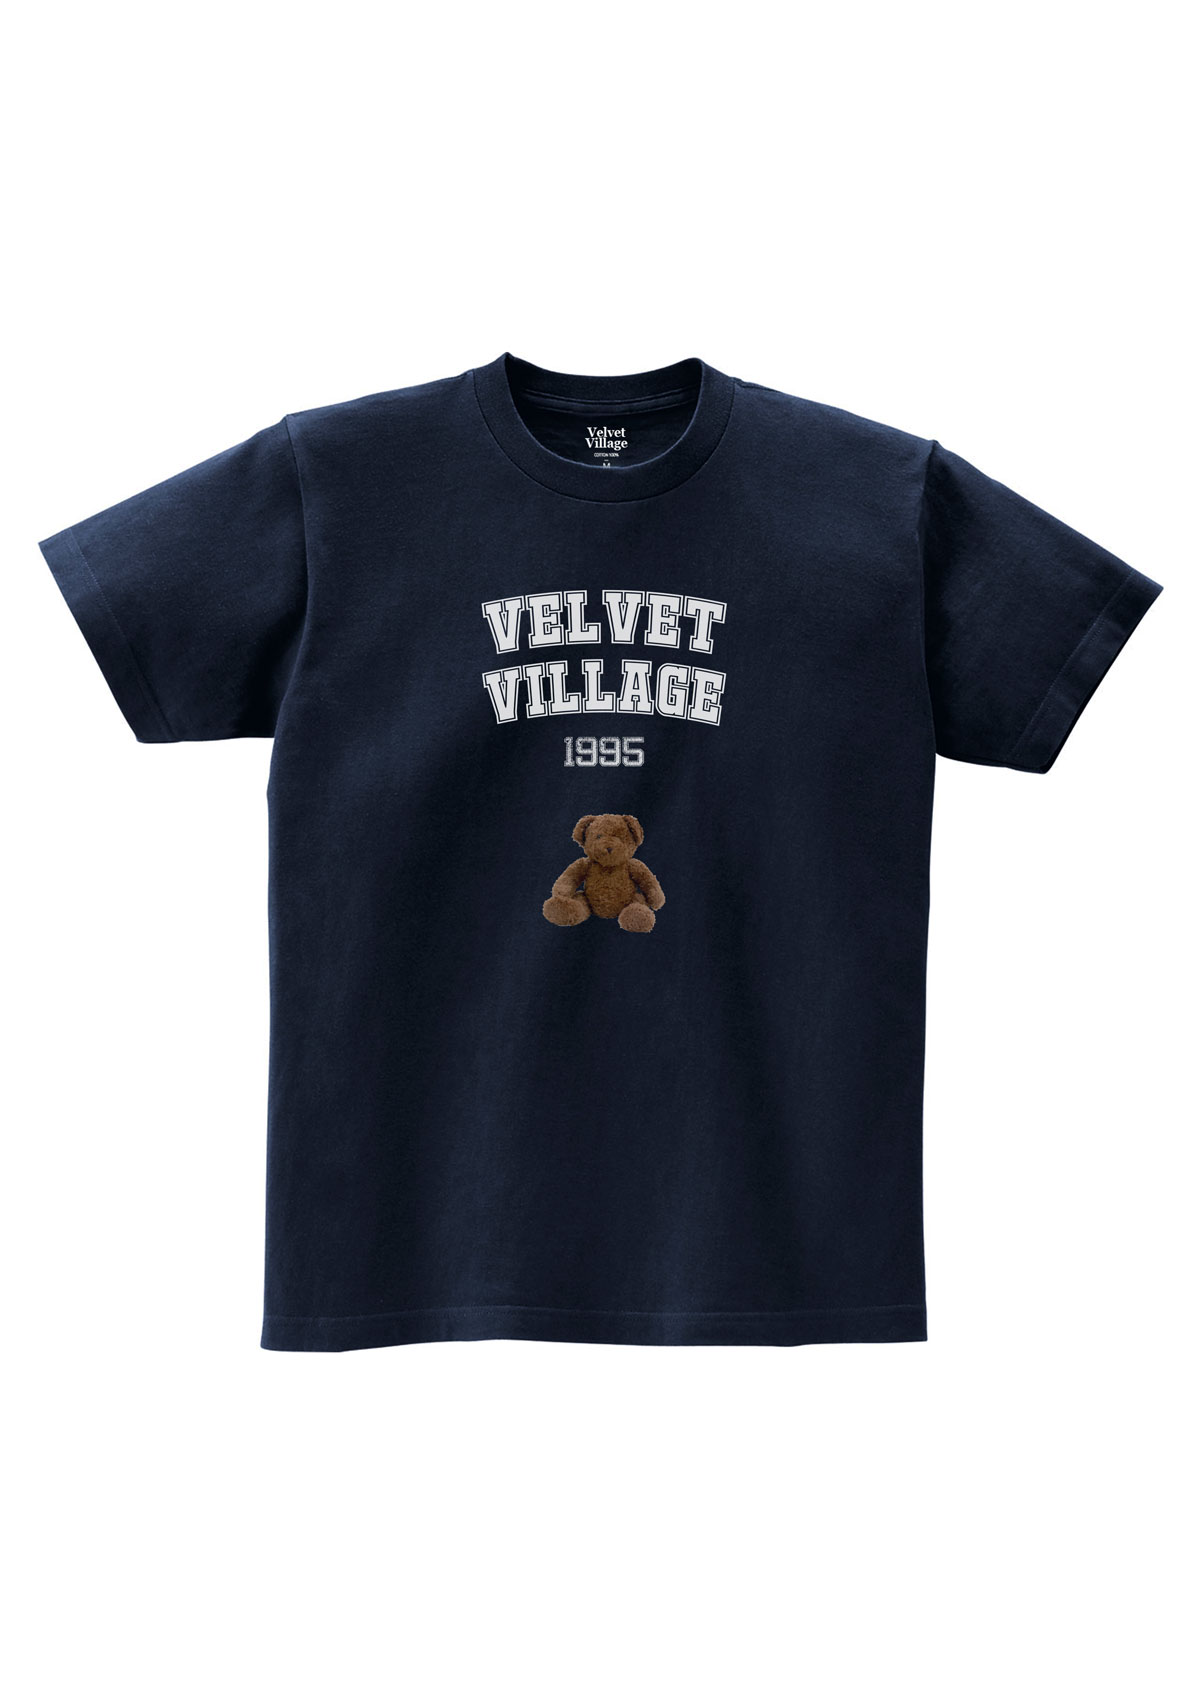 Velvet Bear T-shirt (Navy)